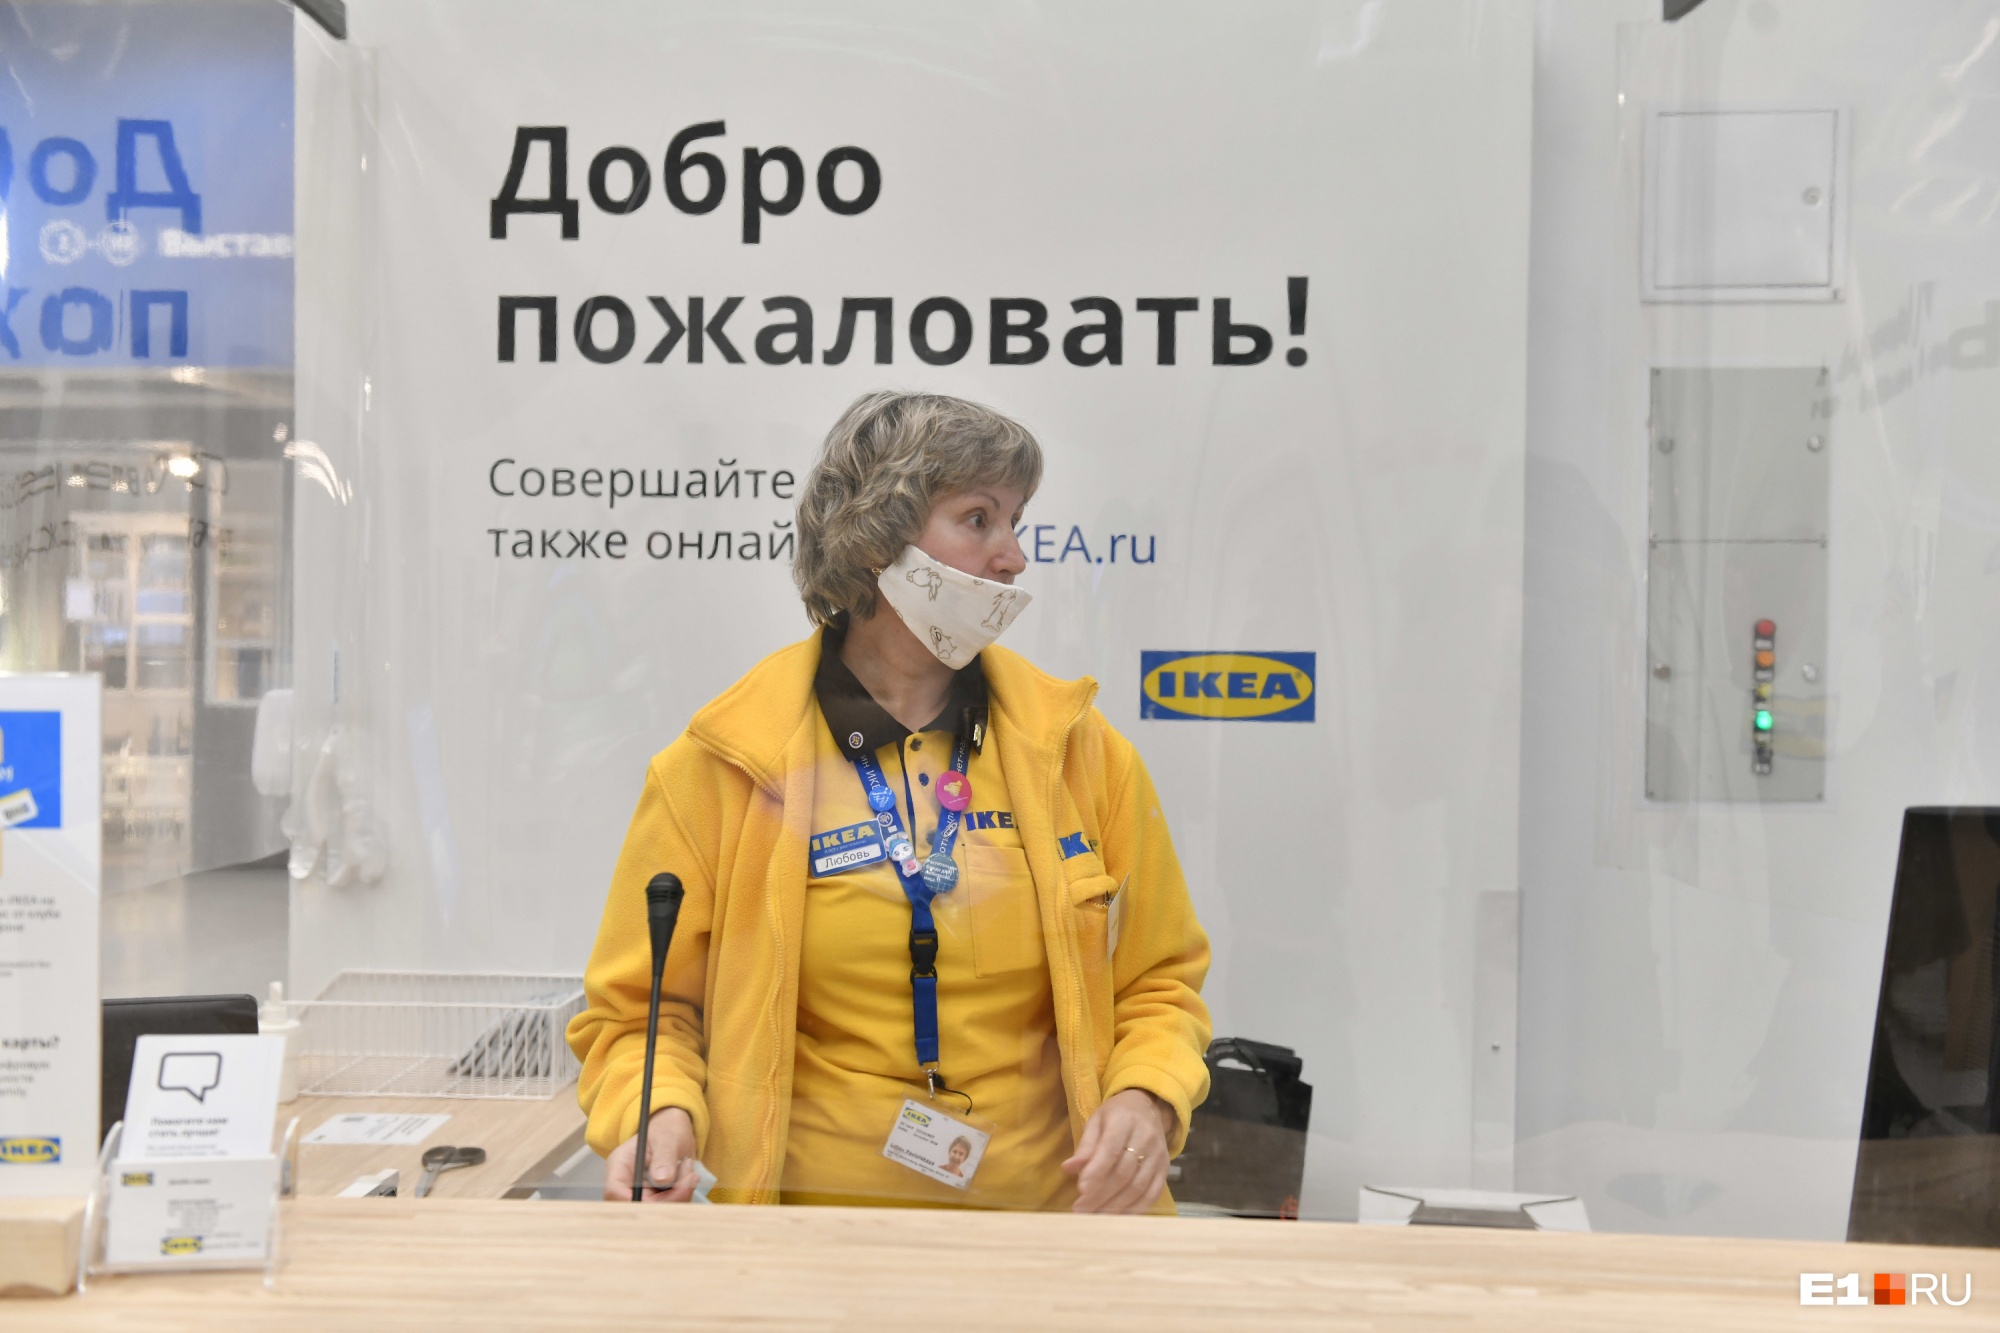 «Сотни сотрудников окажутся без работы». Что будет с персоналом IKEA после закрытия магазина?